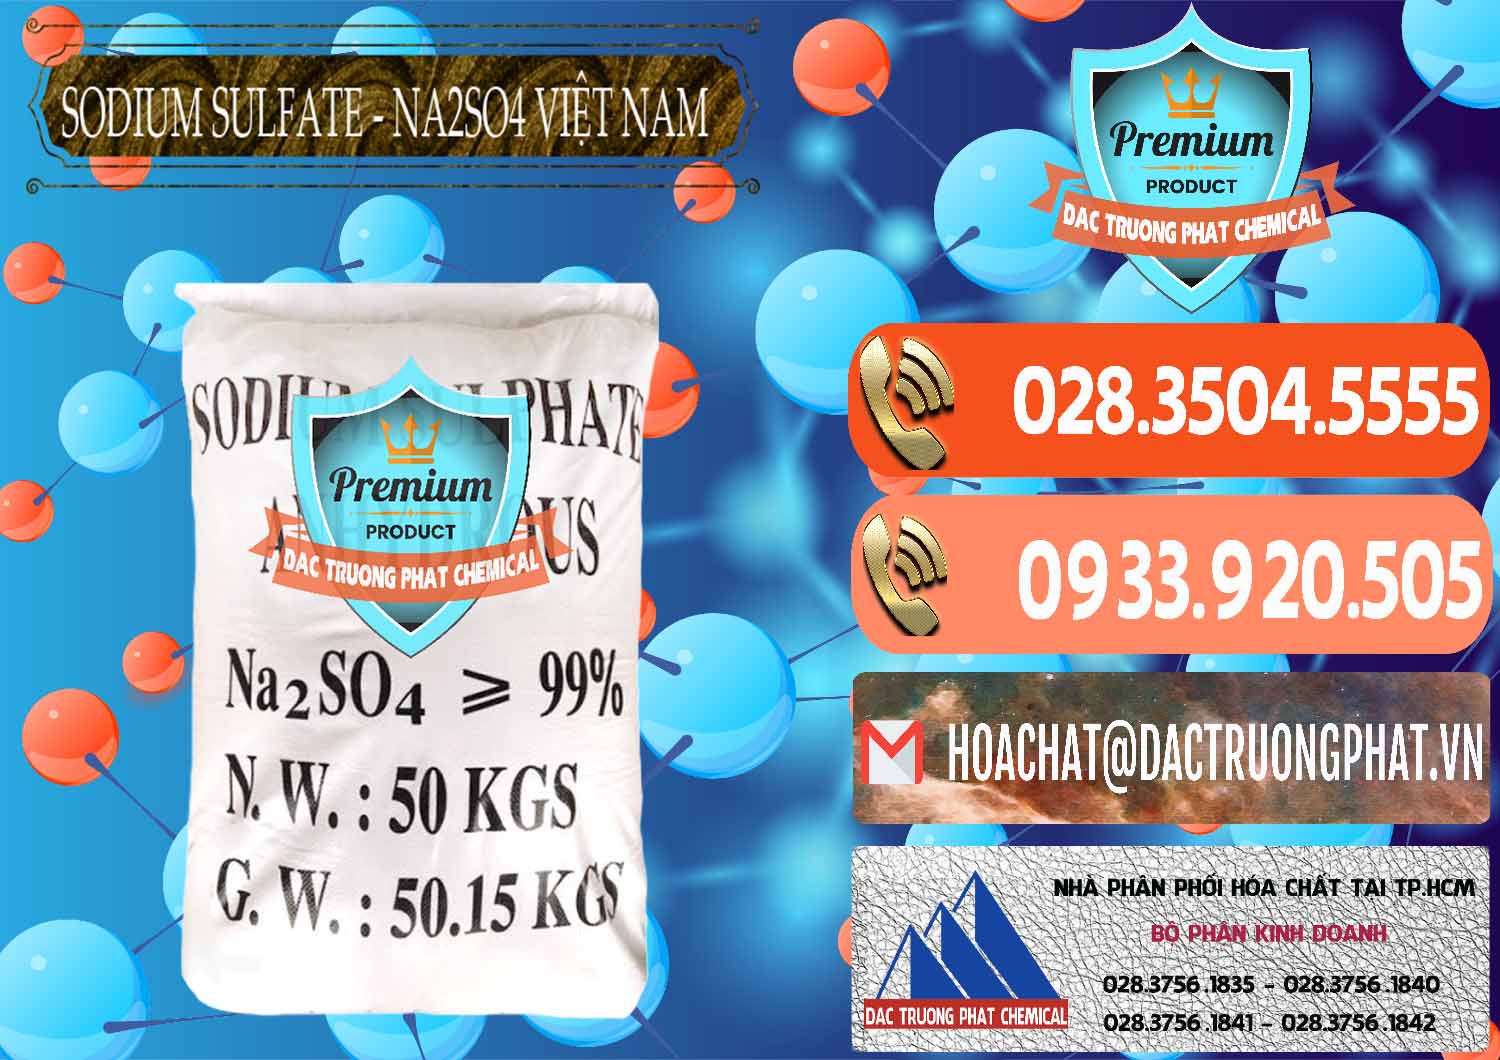 Cty chuyên bán _ cung ứng Sodium Sulphate - Muối Sunfat Na2SO4 Việt Nam - 0355 - Chuyên cung cấp & kinh doanh hóa chất tại TP.HCM - hoachatmientay.com